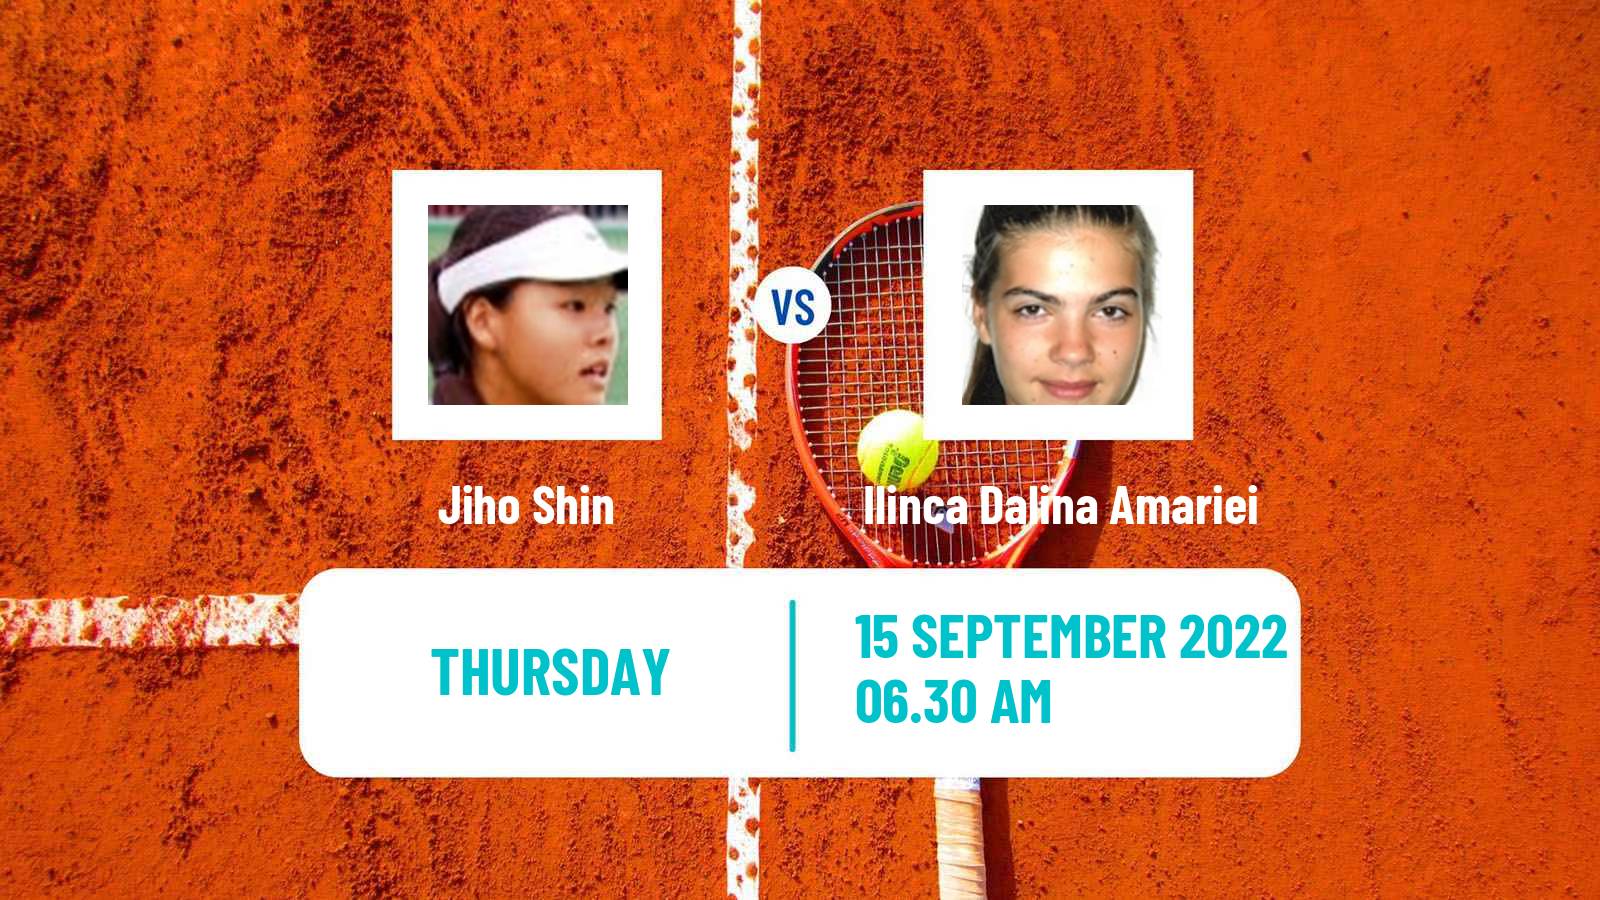 Tennis ITF Tournaments Jiho Shin - Ilinca Dalina Amariei